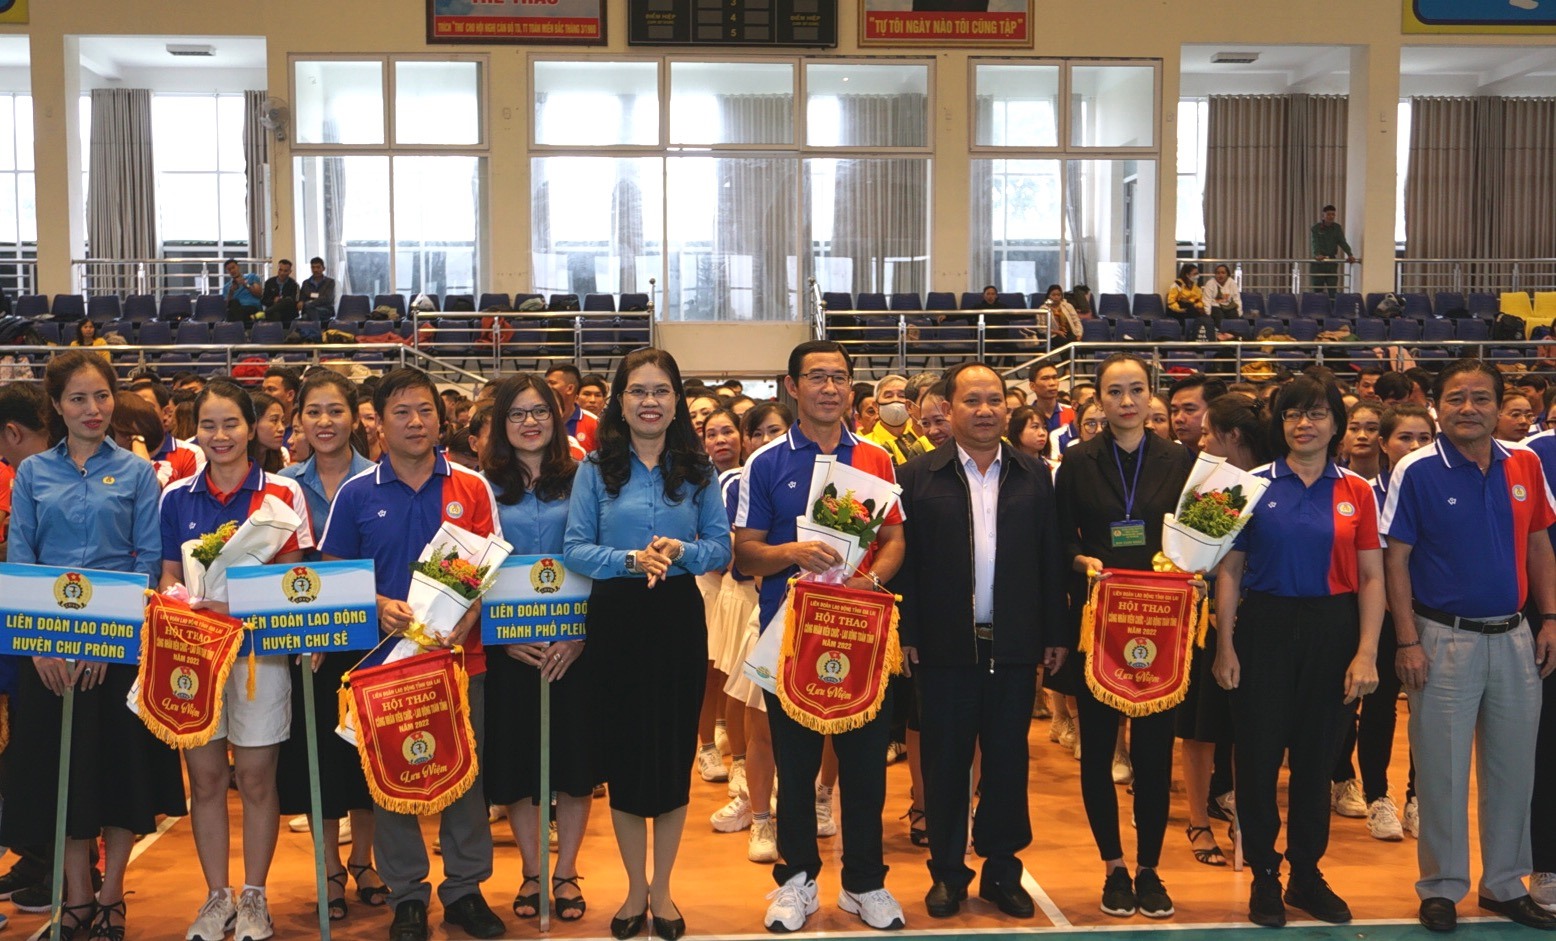 Lãnh đạo tỉnh Gia Lai trao cờ, tặng hoa cho các đội thi. Ảnh TT